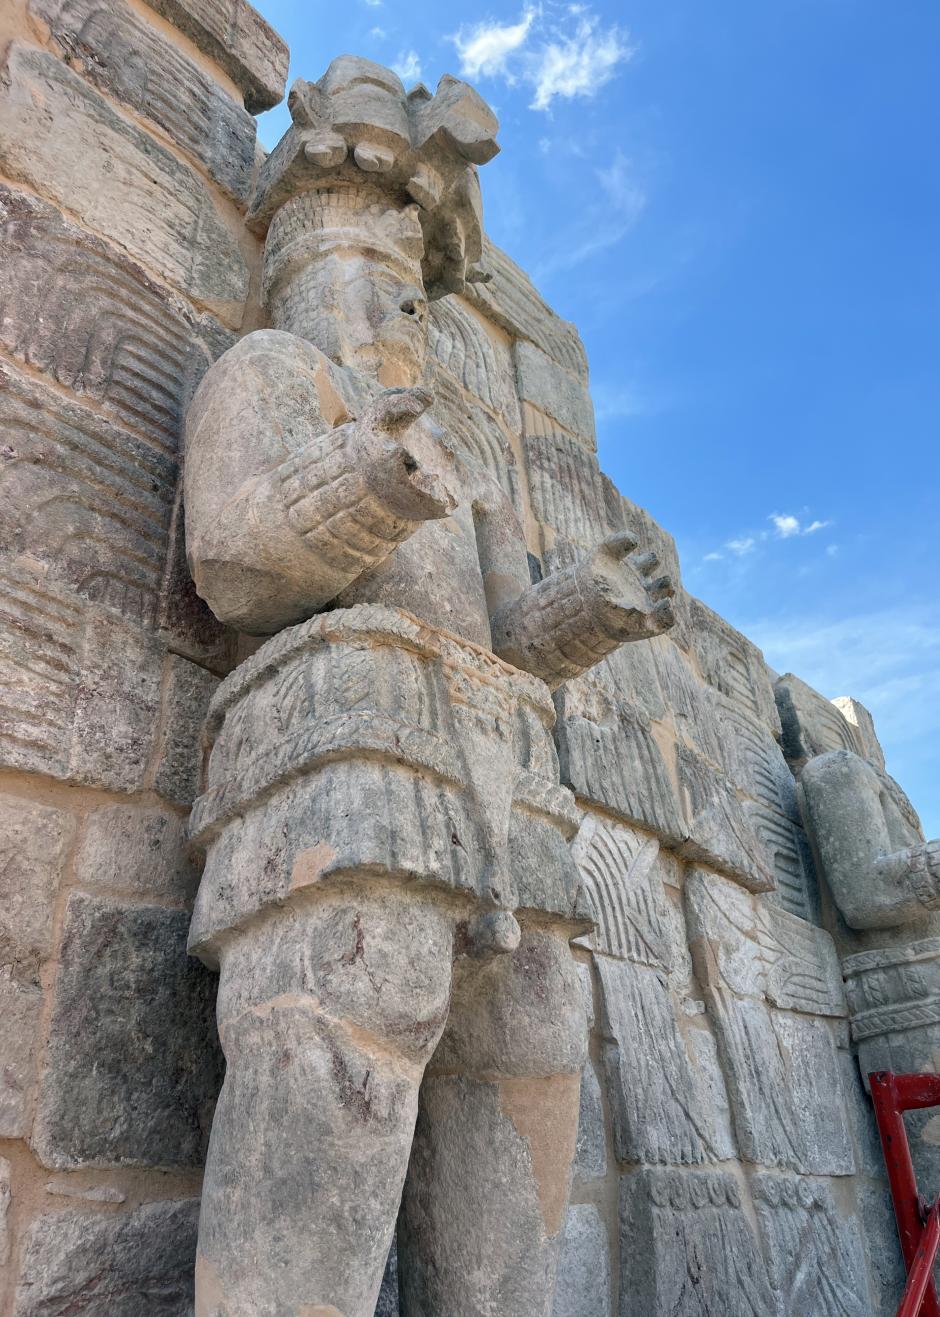 Escultura prehispánica "dignatario" en la zona arqueológica Chaac en Kabah, el 4 de marzo de 2023 en Mérida, estado de Yucatán (México).